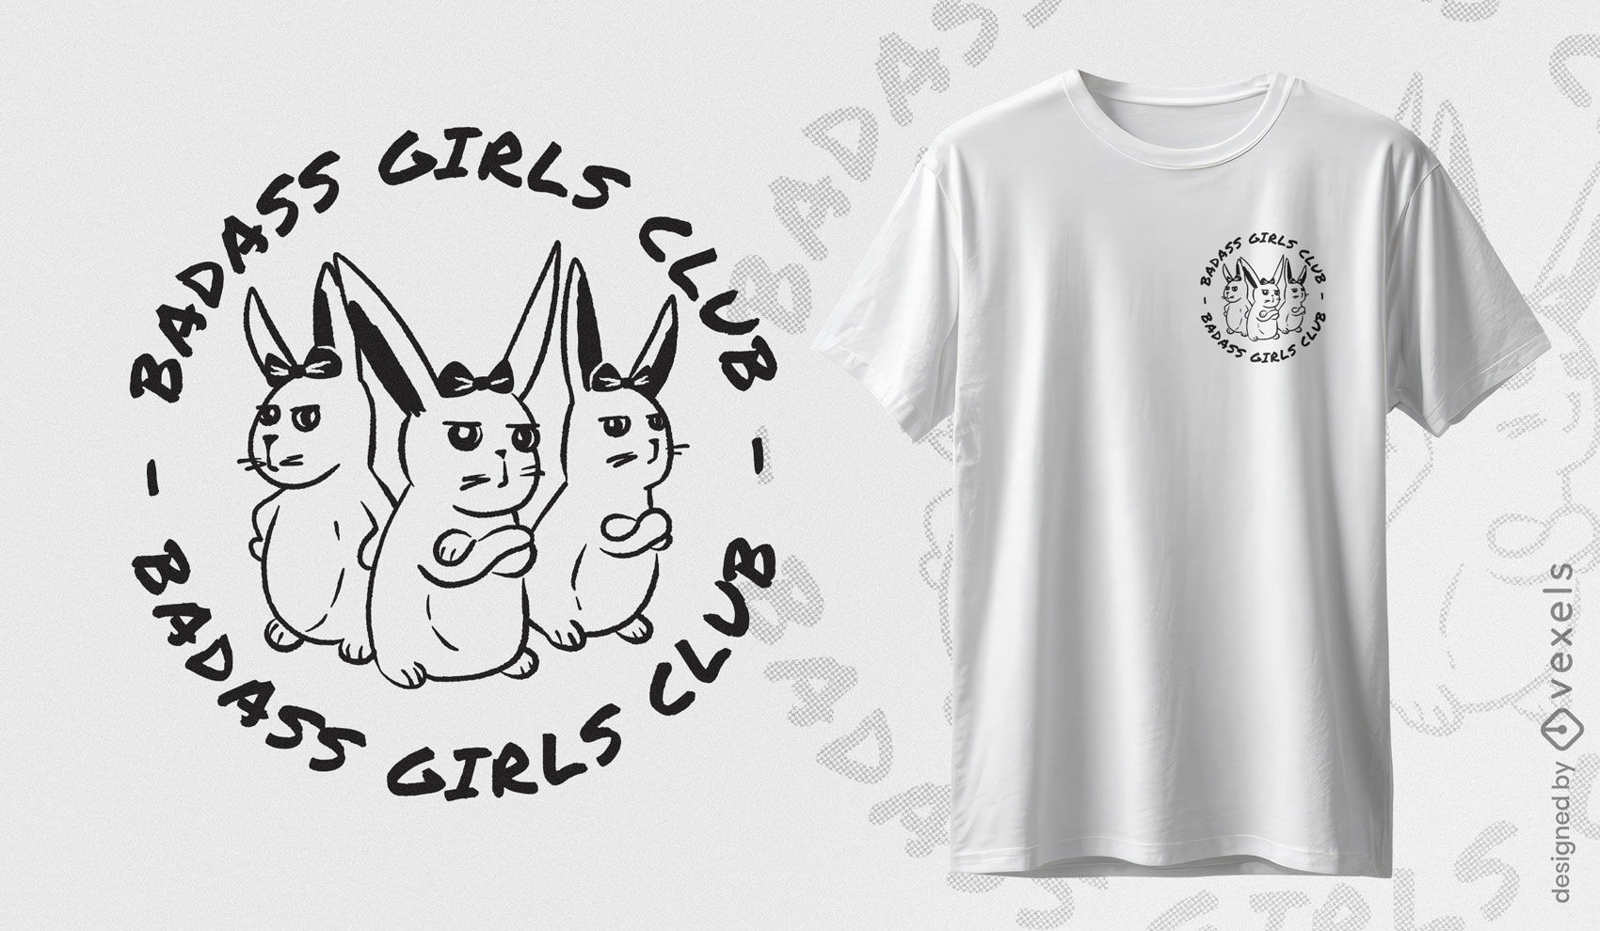 Badass girls club bunnies t-shirt design